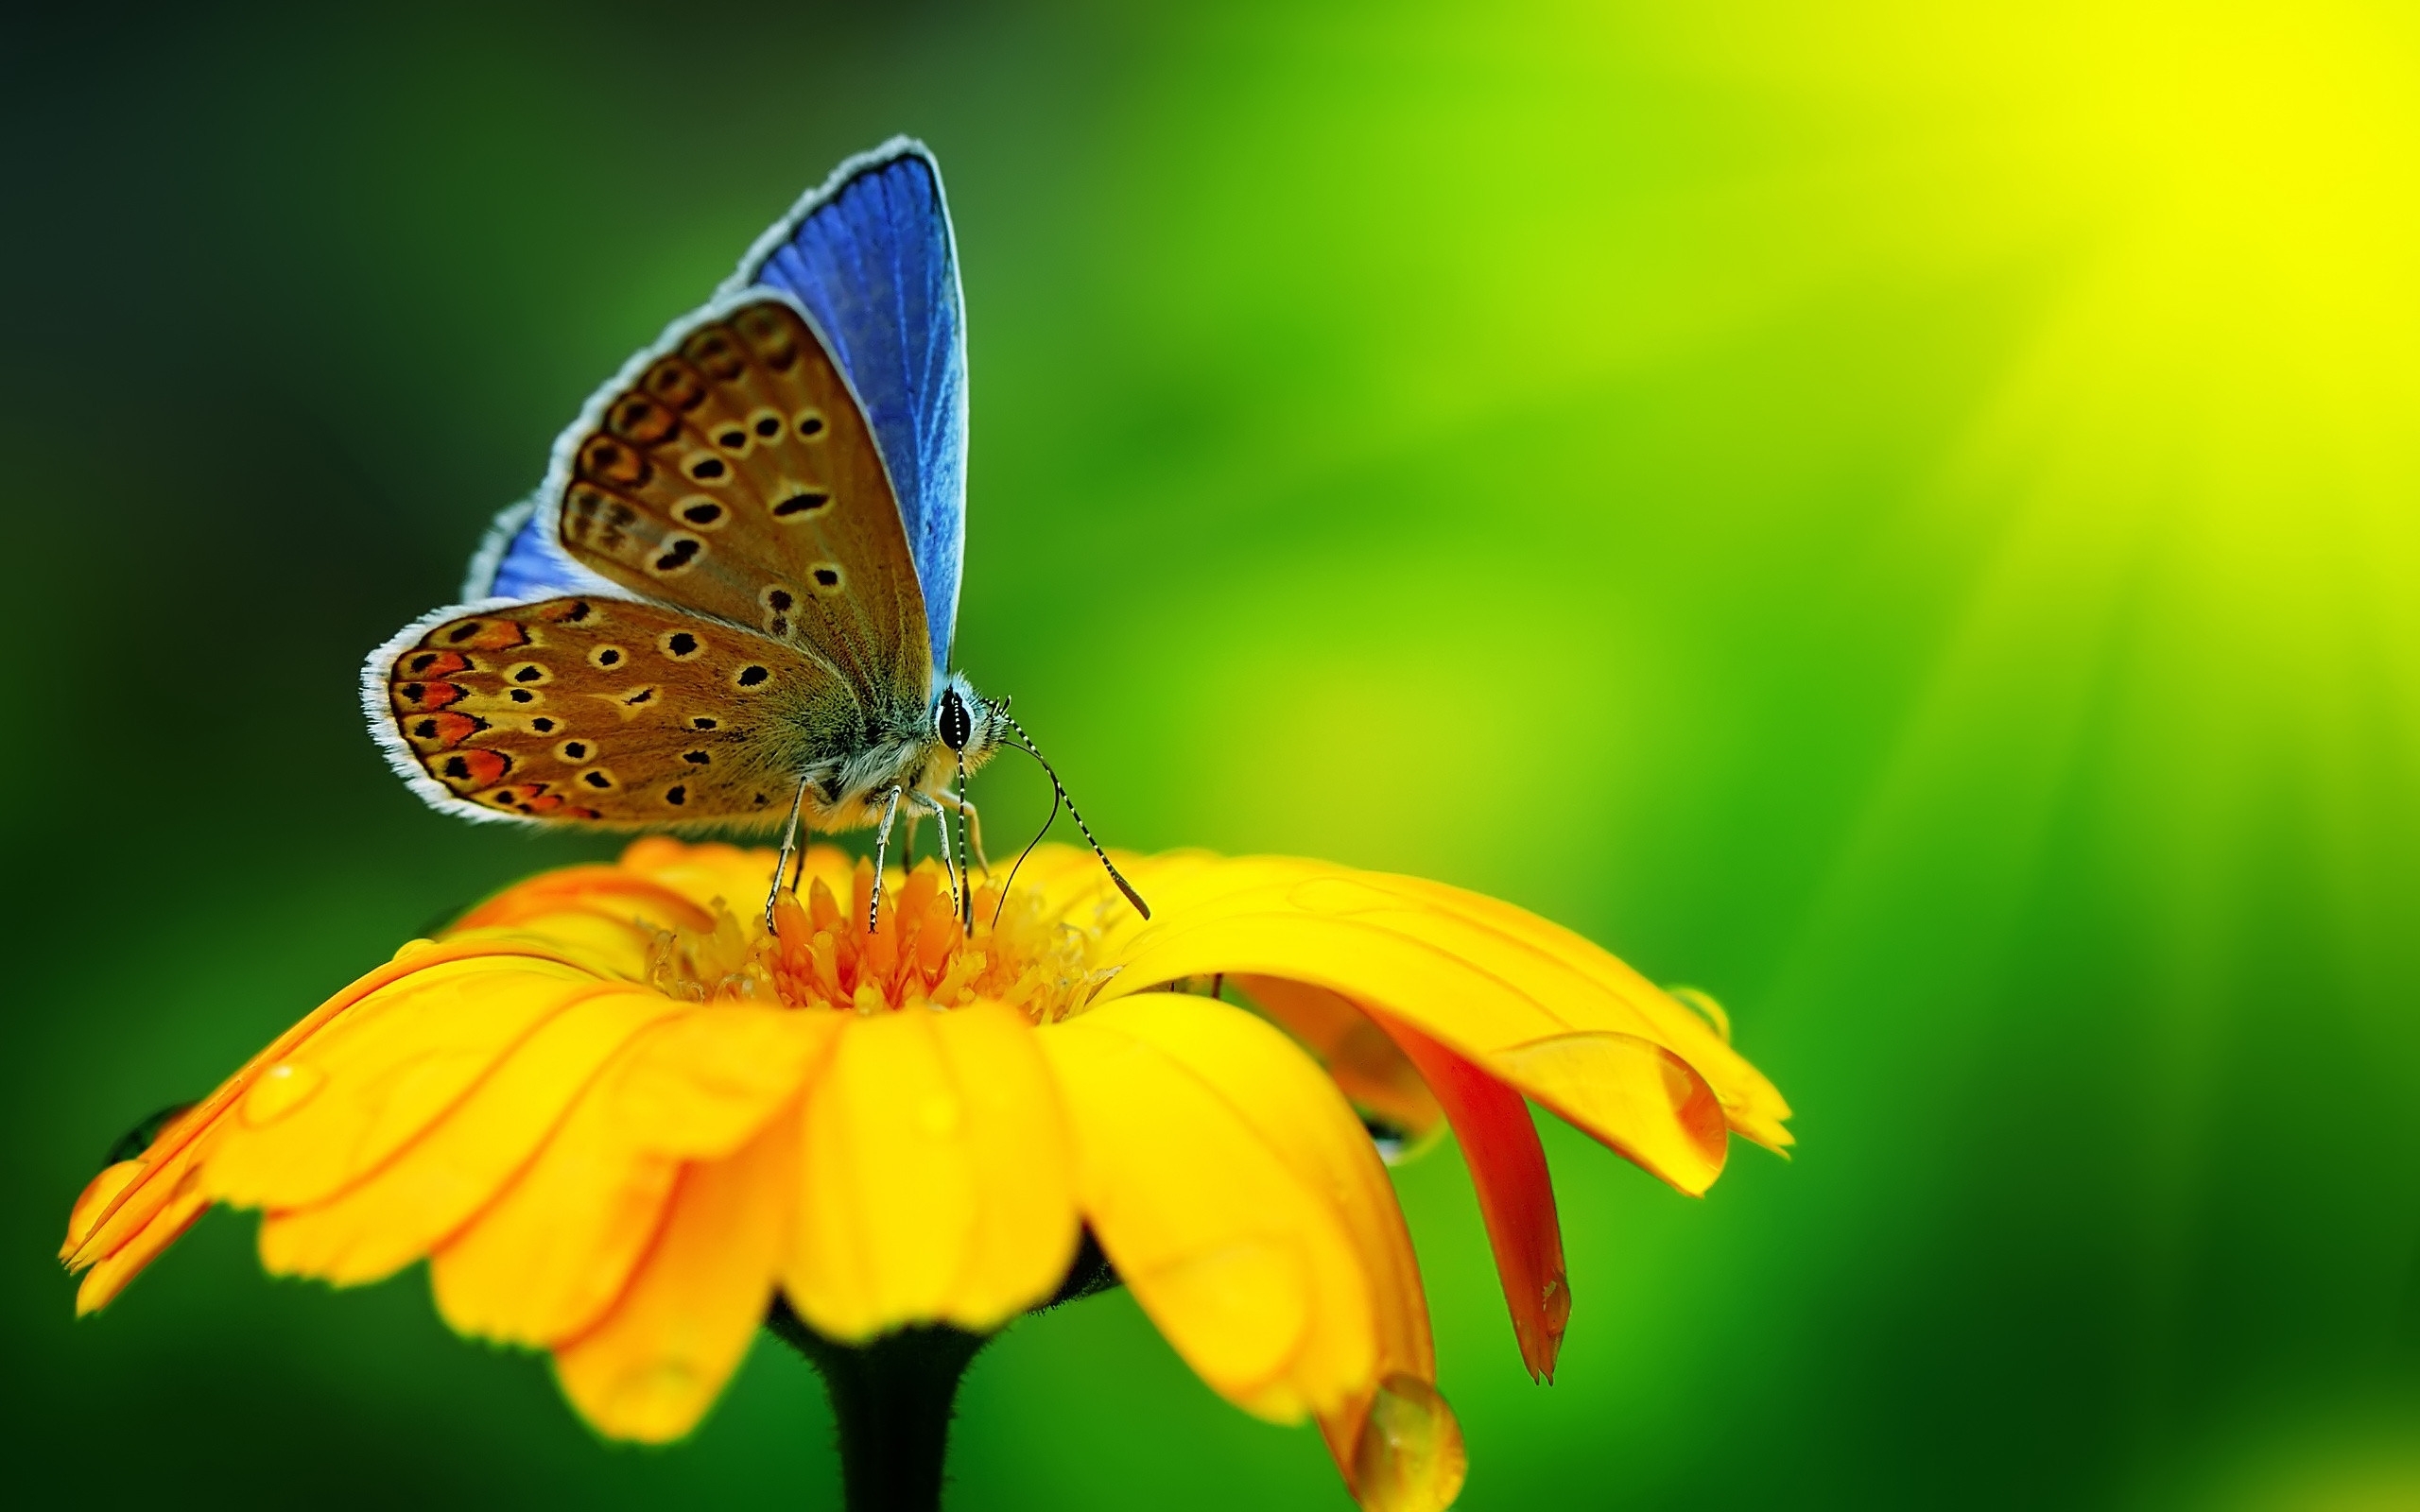 Butterfly Pollen for 2560 x 1600 widescreen resolution